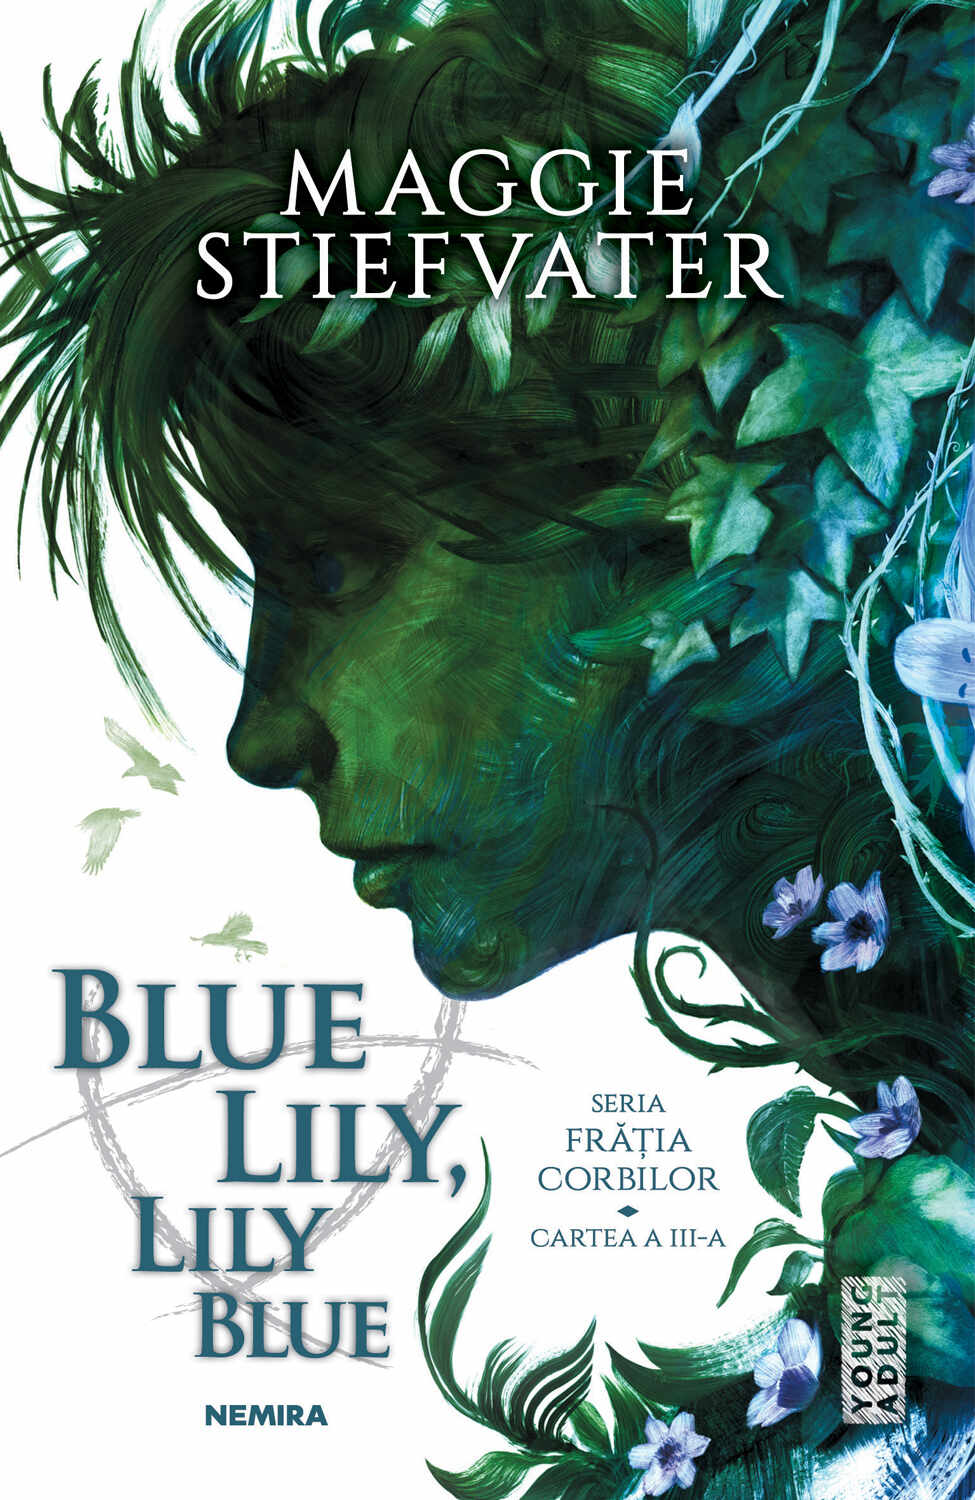 Blue Lily Lily Blue (Seria FRĂȚIA CORBILOR partea a III-a)